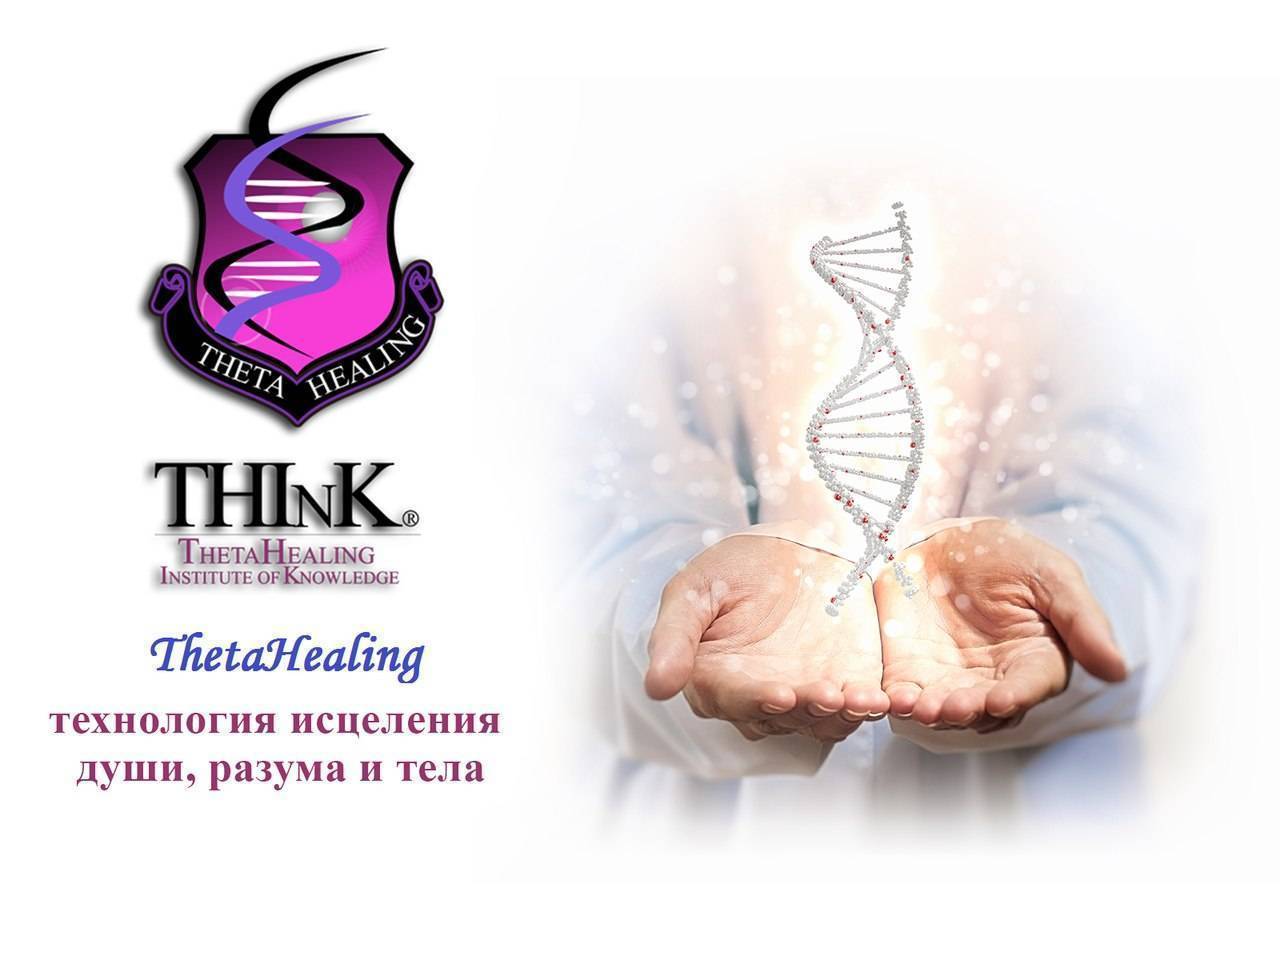 Theta healing (тета-хилинг): отзывы, технологии, обучение